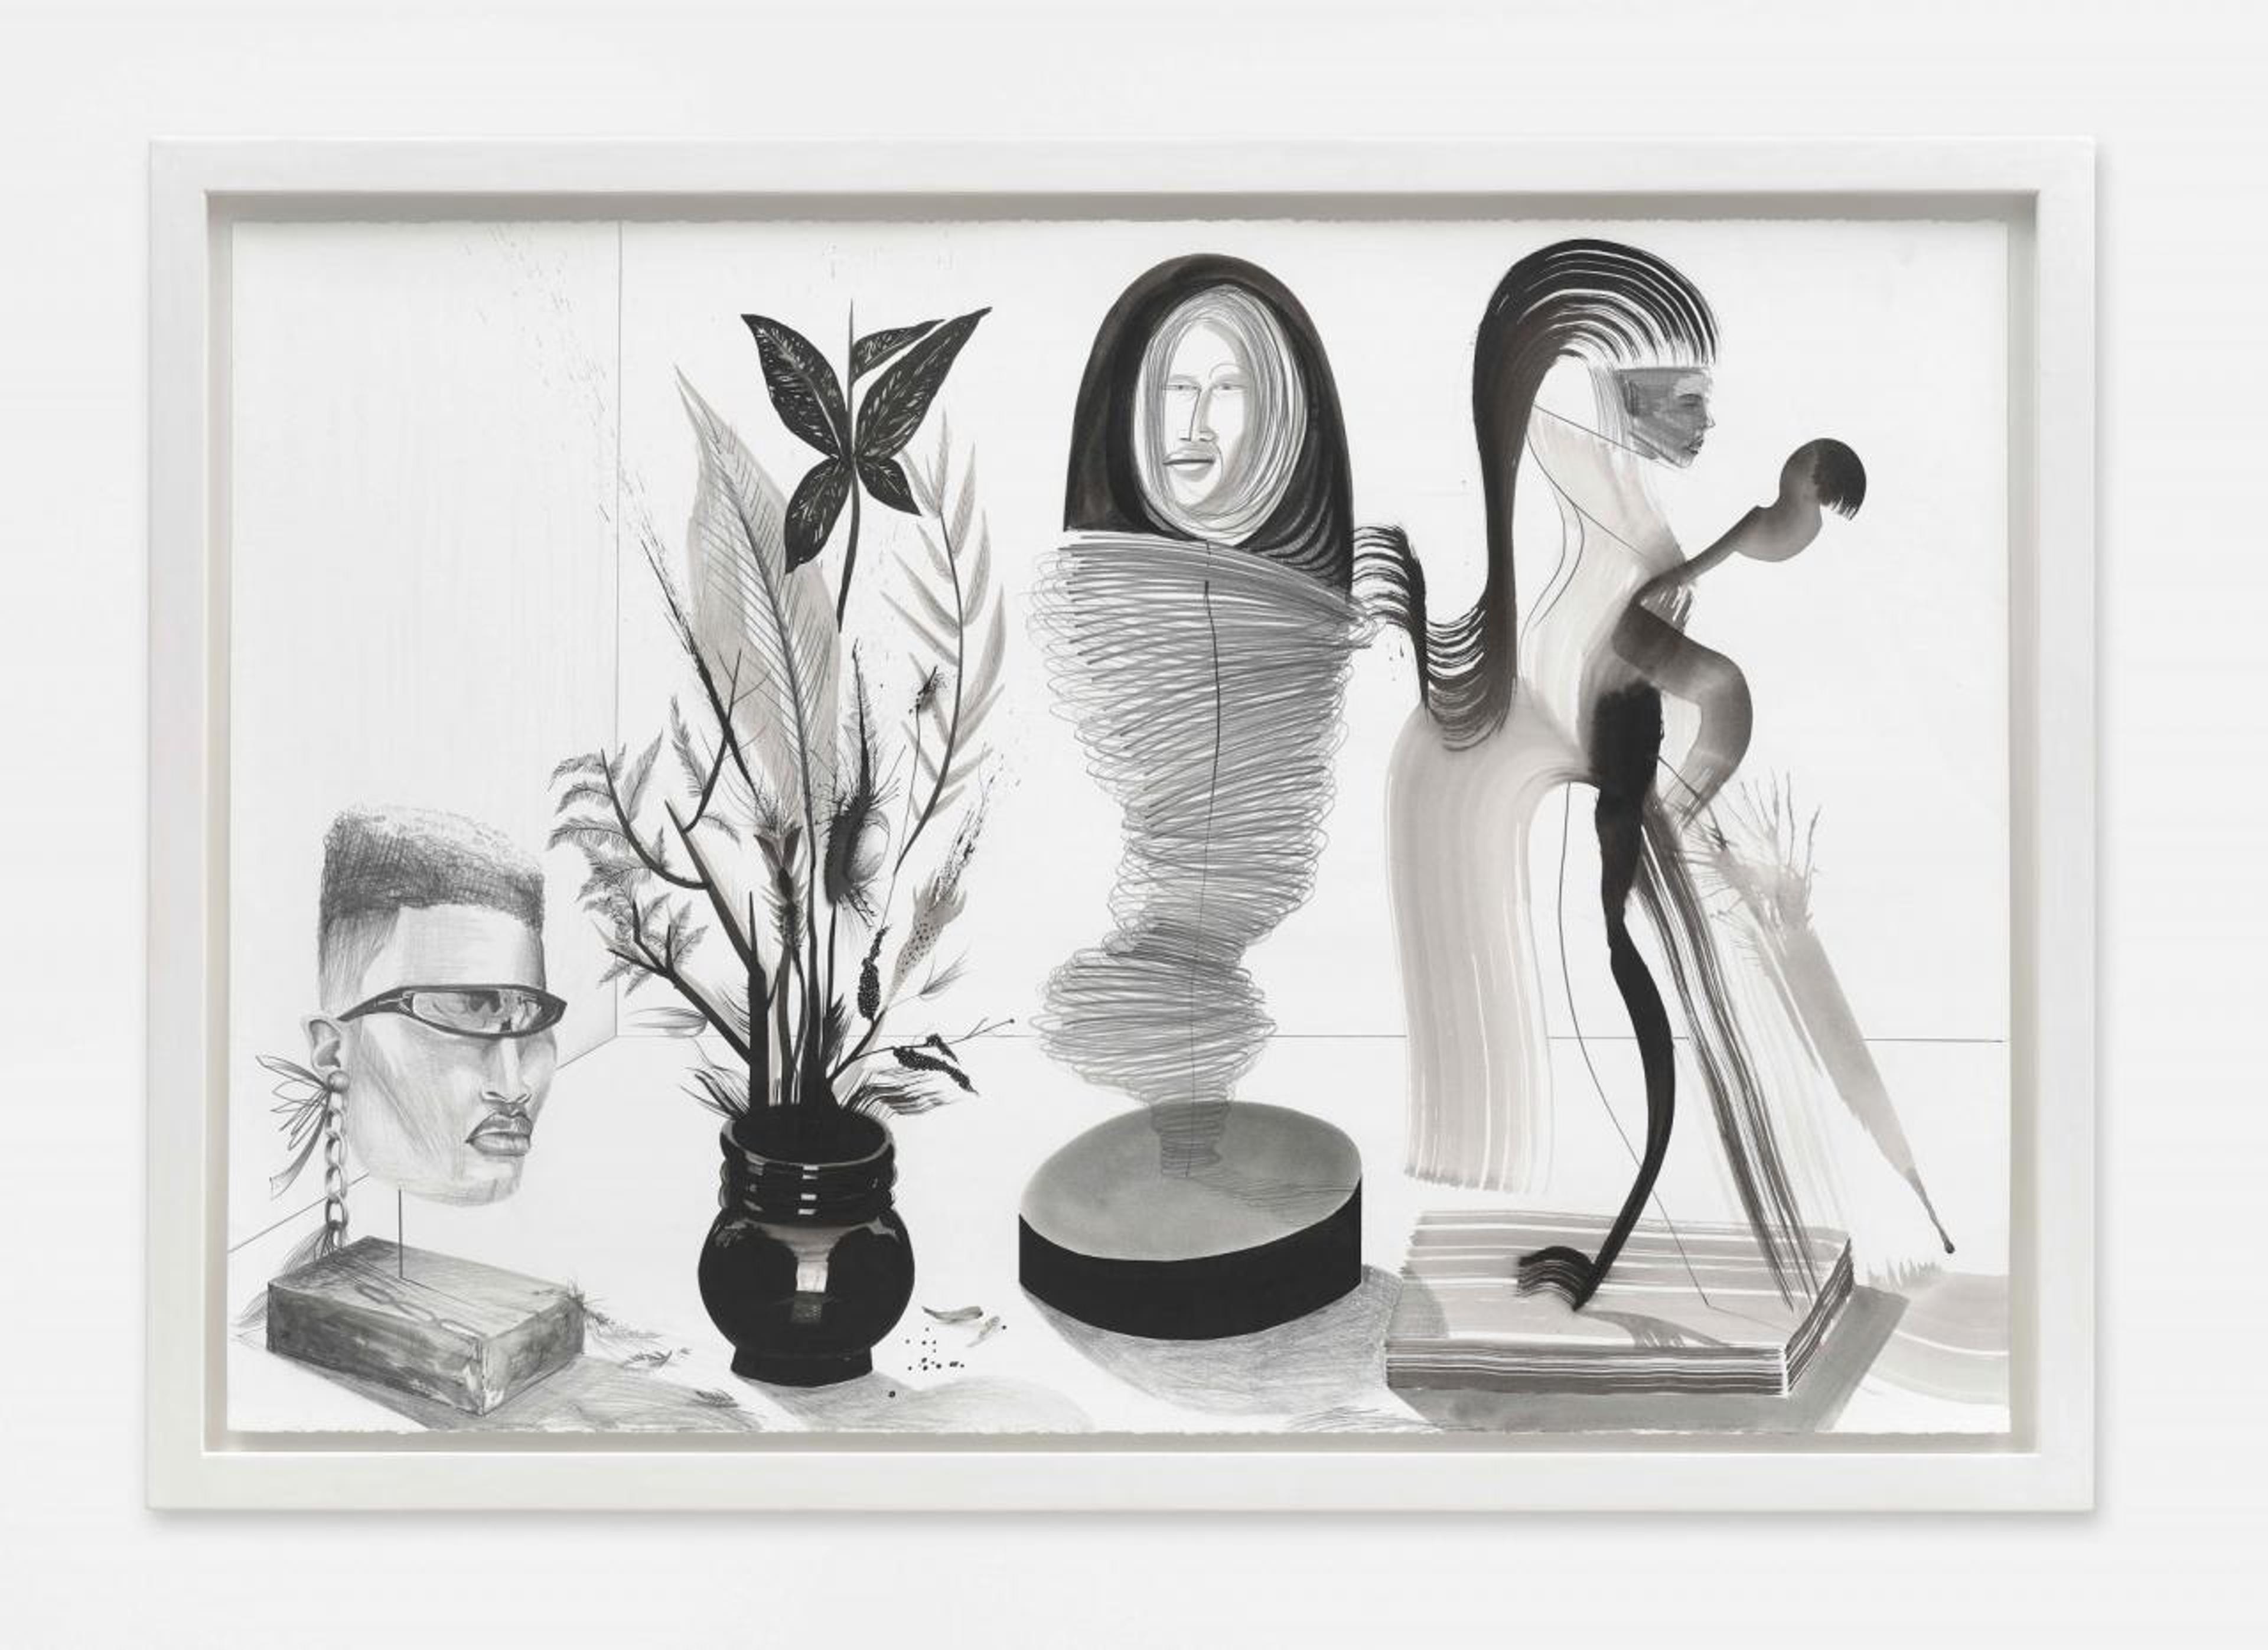 Dalton Gata, Esculturas I, 2020. Ink and graphite on paper, 76 x 112 cm